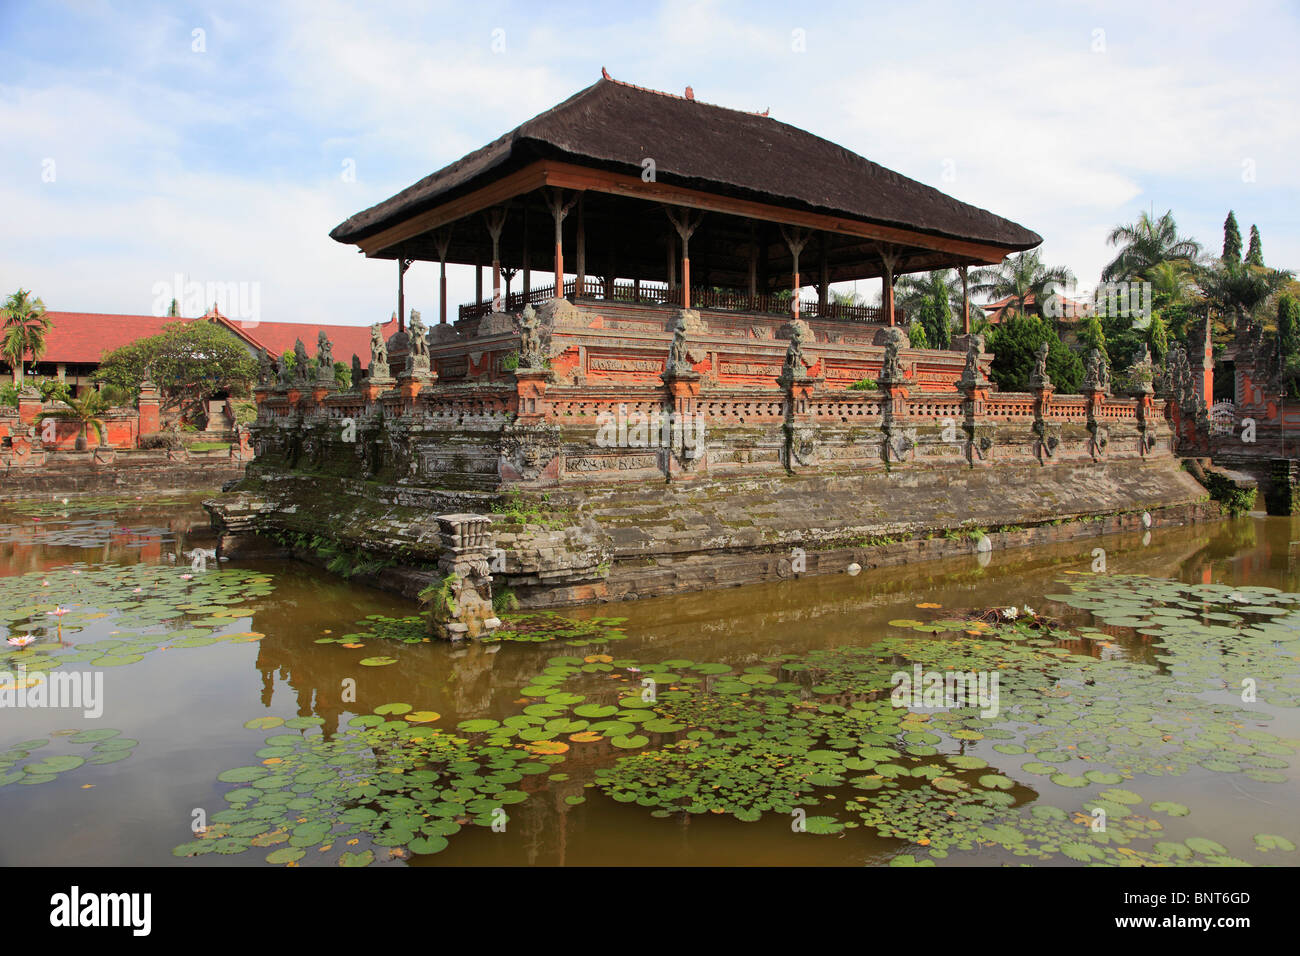 Indonesia, Bali, Semarapura, Bale Kambang, floating pavilion, Stock Photo